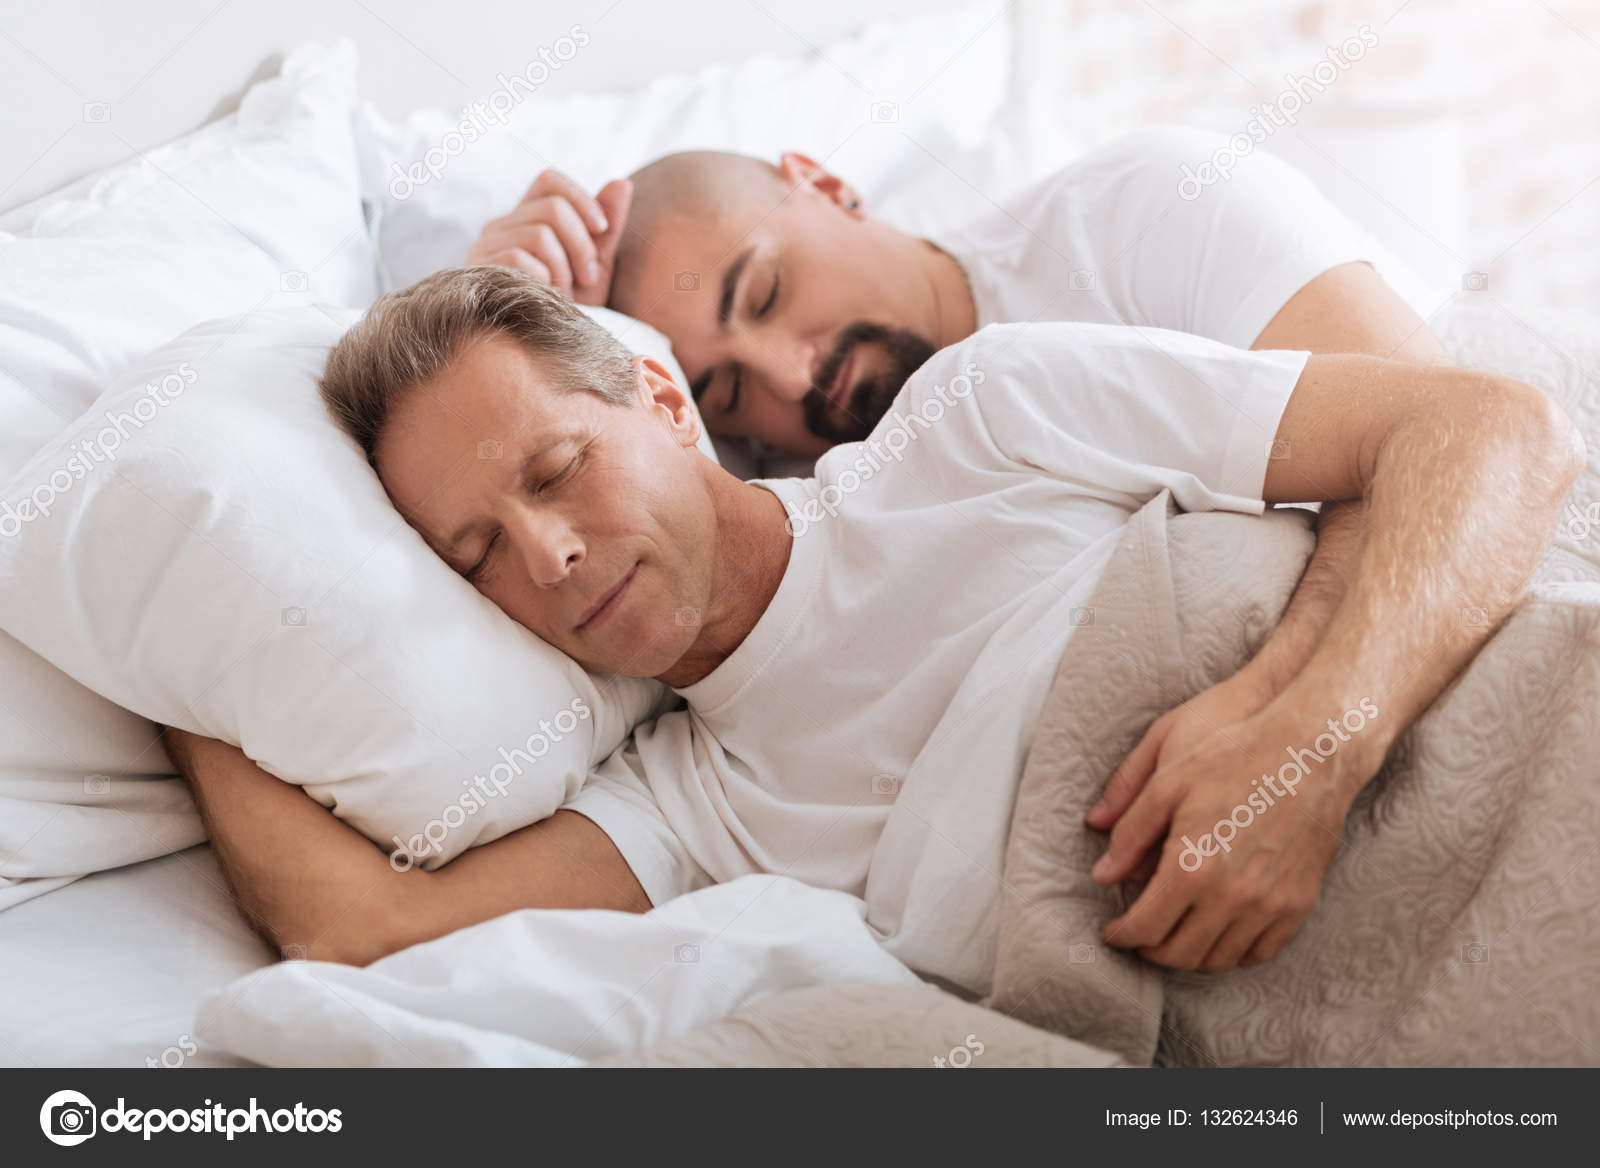 Как называется мужчина с мужчиной спят. Два человека спят. Два человека спят в обнимку. Мужики спят в обнимку. Спать в обнимку с мужчиной.